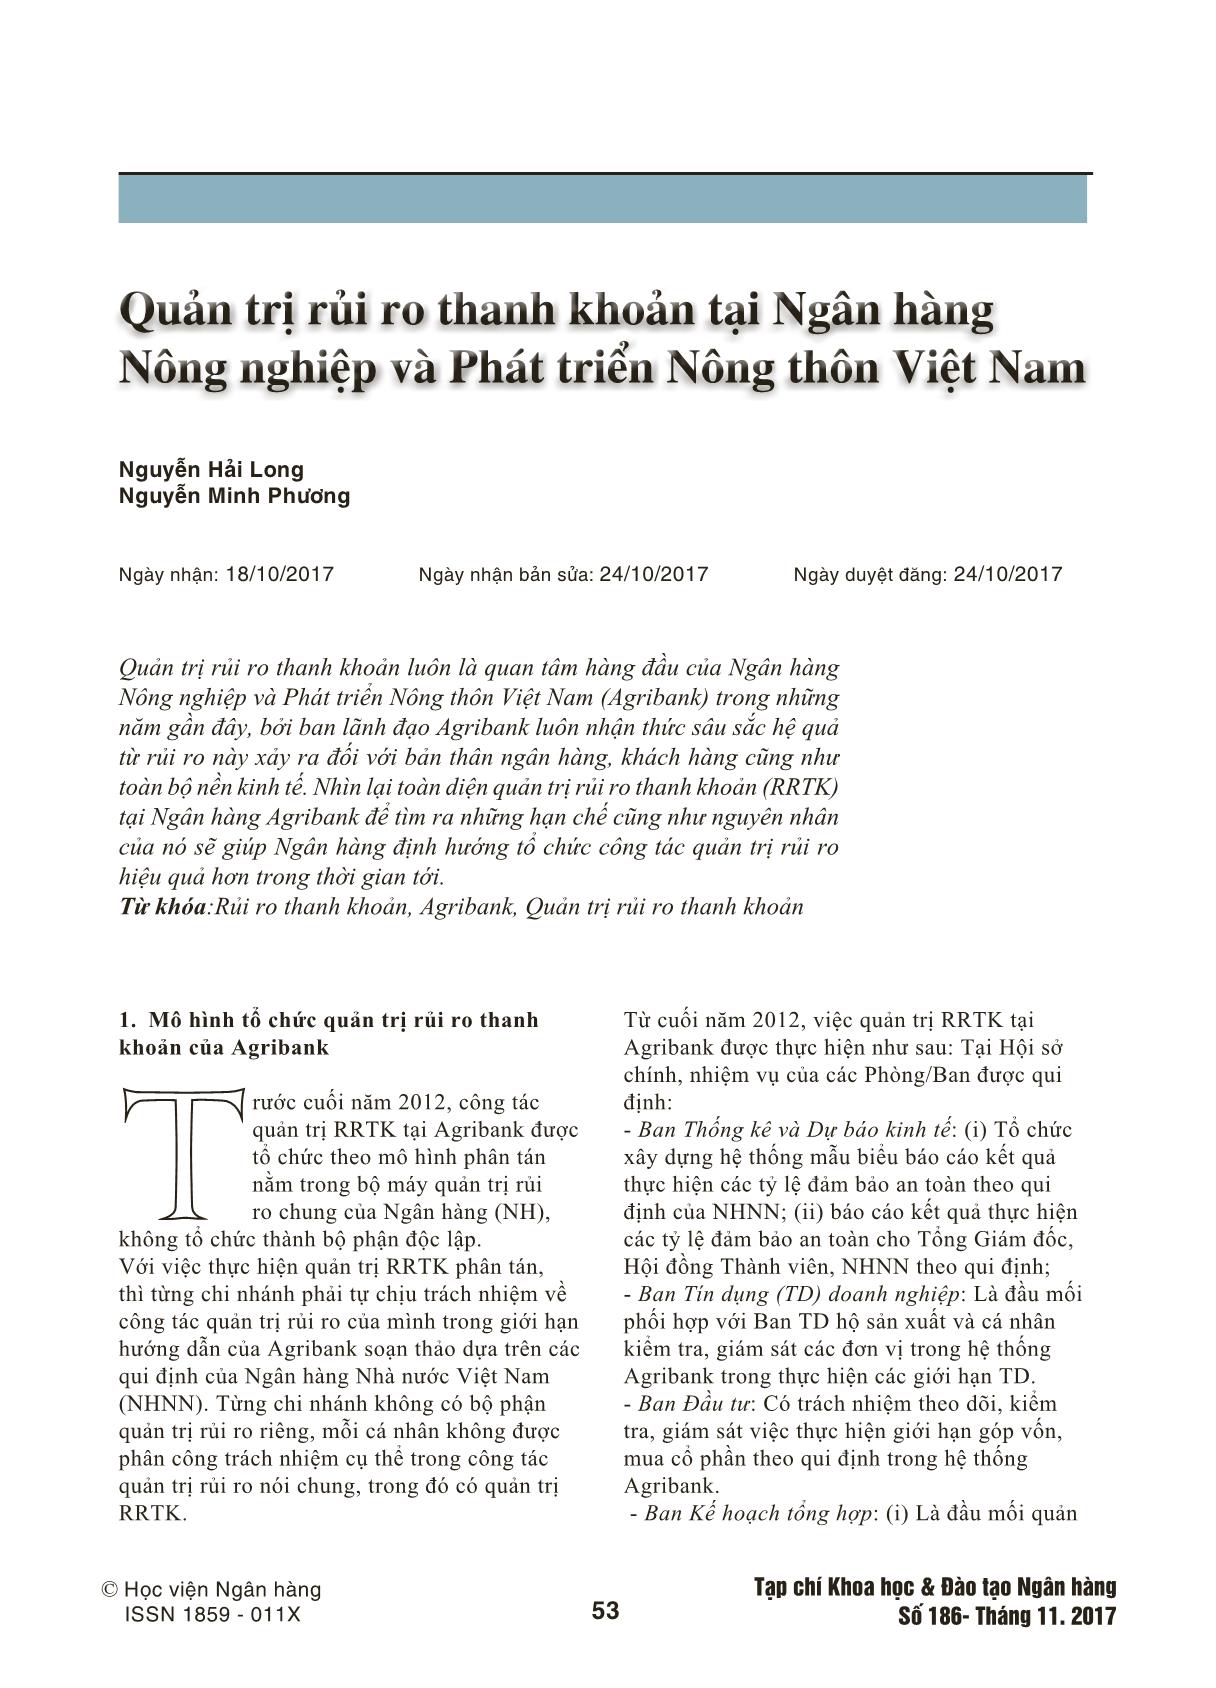 Quản trị rủi ro thanh khoản tại Ngân hàng Nông nghiệp và Phát triển Nông thôn Việt Nam trang 1